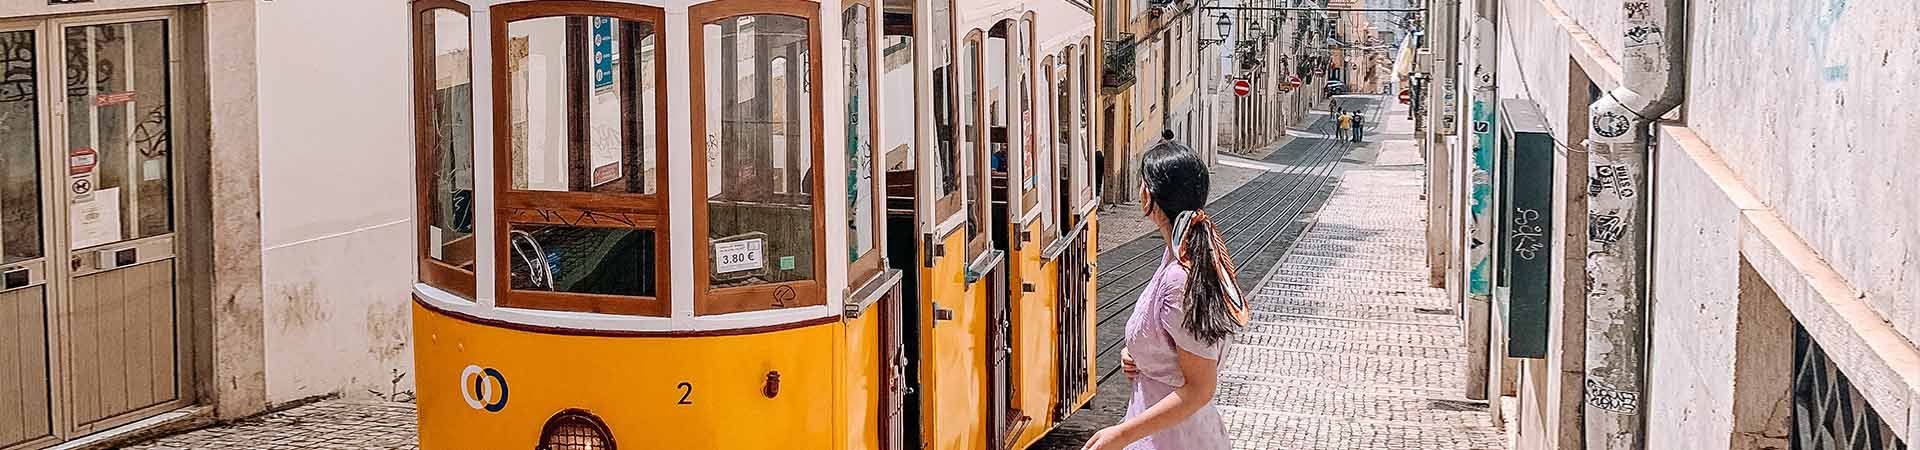 Au centre de l'image, un tramway jaune et blanc de Lisbonne, passant dans l'une des rues pavées de Lisbonne, bordée d'immeubles aux façades anciennes. À droite du tram, il y a une fille brune, qui porte une robe lilas et les cheveux attachés par un foulard coloré, tout en regardant le tram.